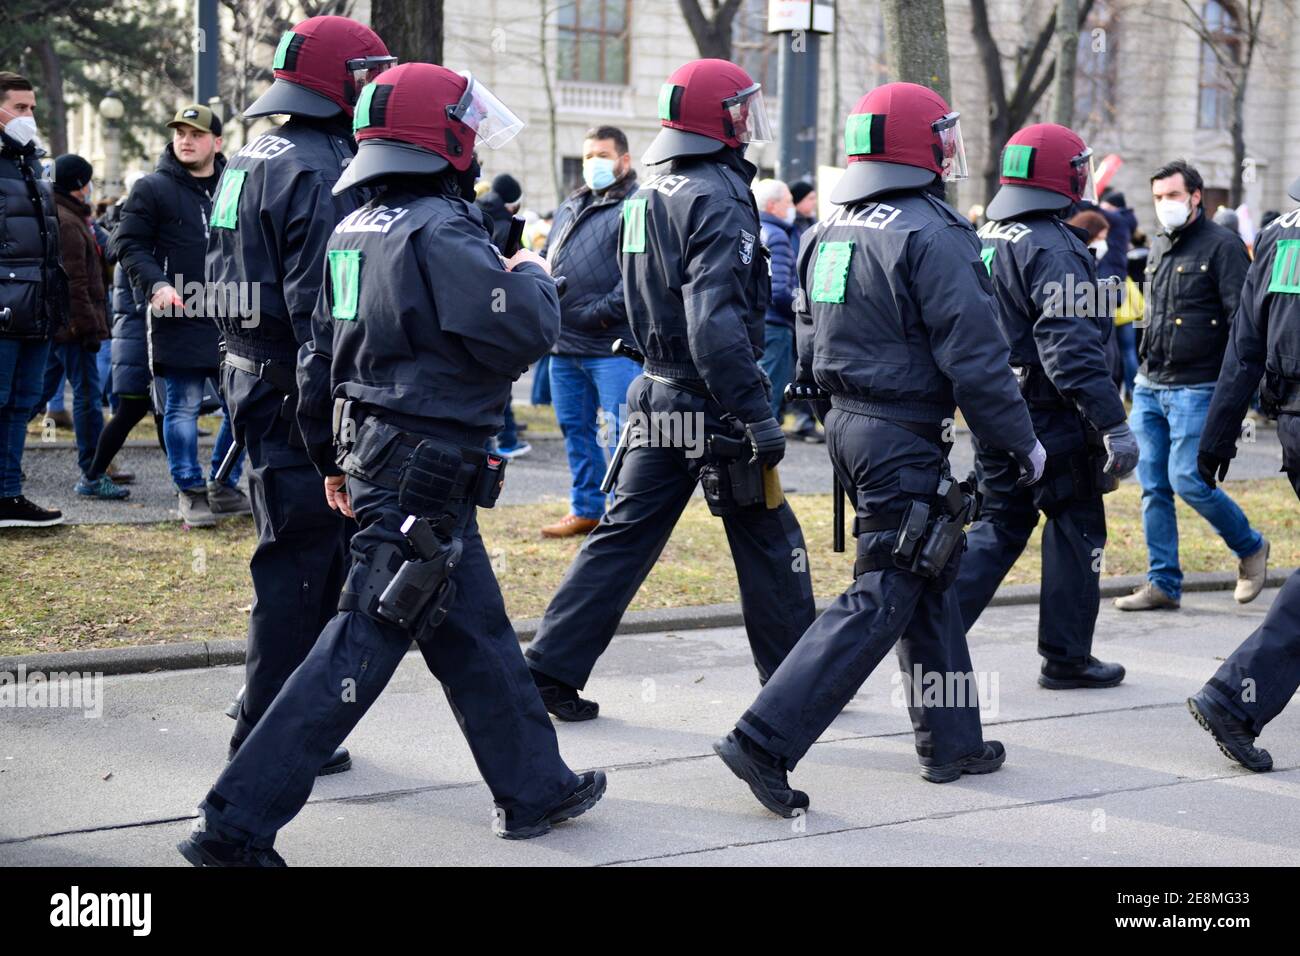 31 gennaio 2021. Vienna, Austria. Una manifestazione anti corona non registrata con diverse migliaia di persone è stata circondata e distretta dalla polizia. Foto Stock